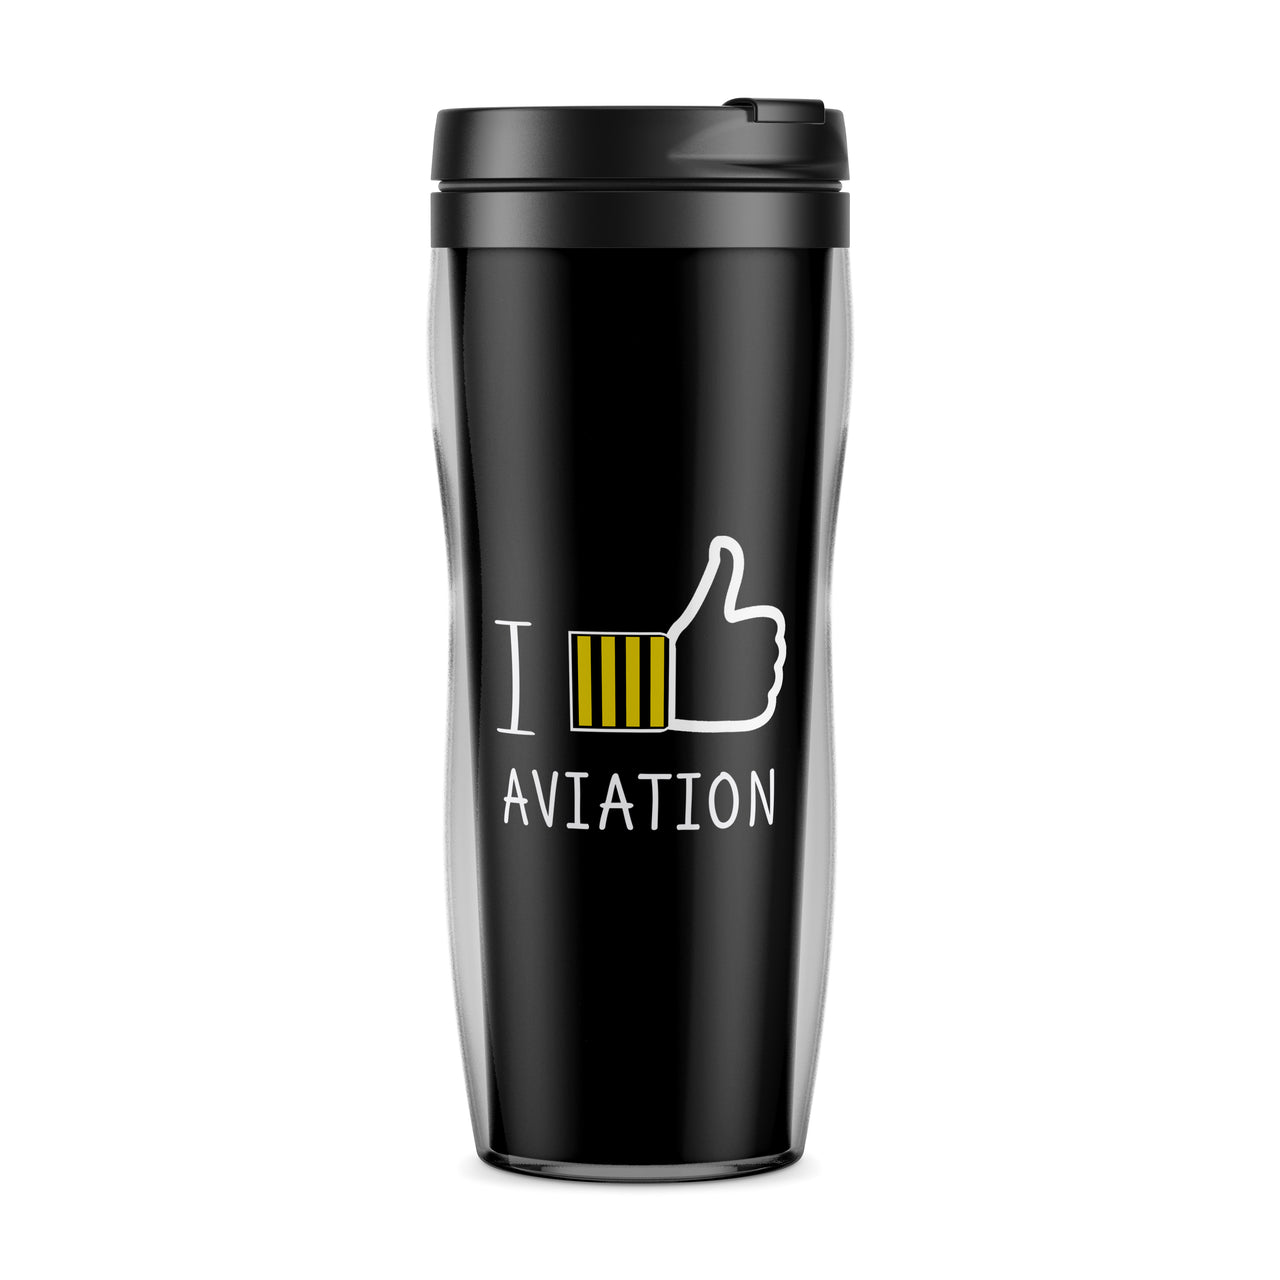 I Like Aviation Designed Travel Mugs